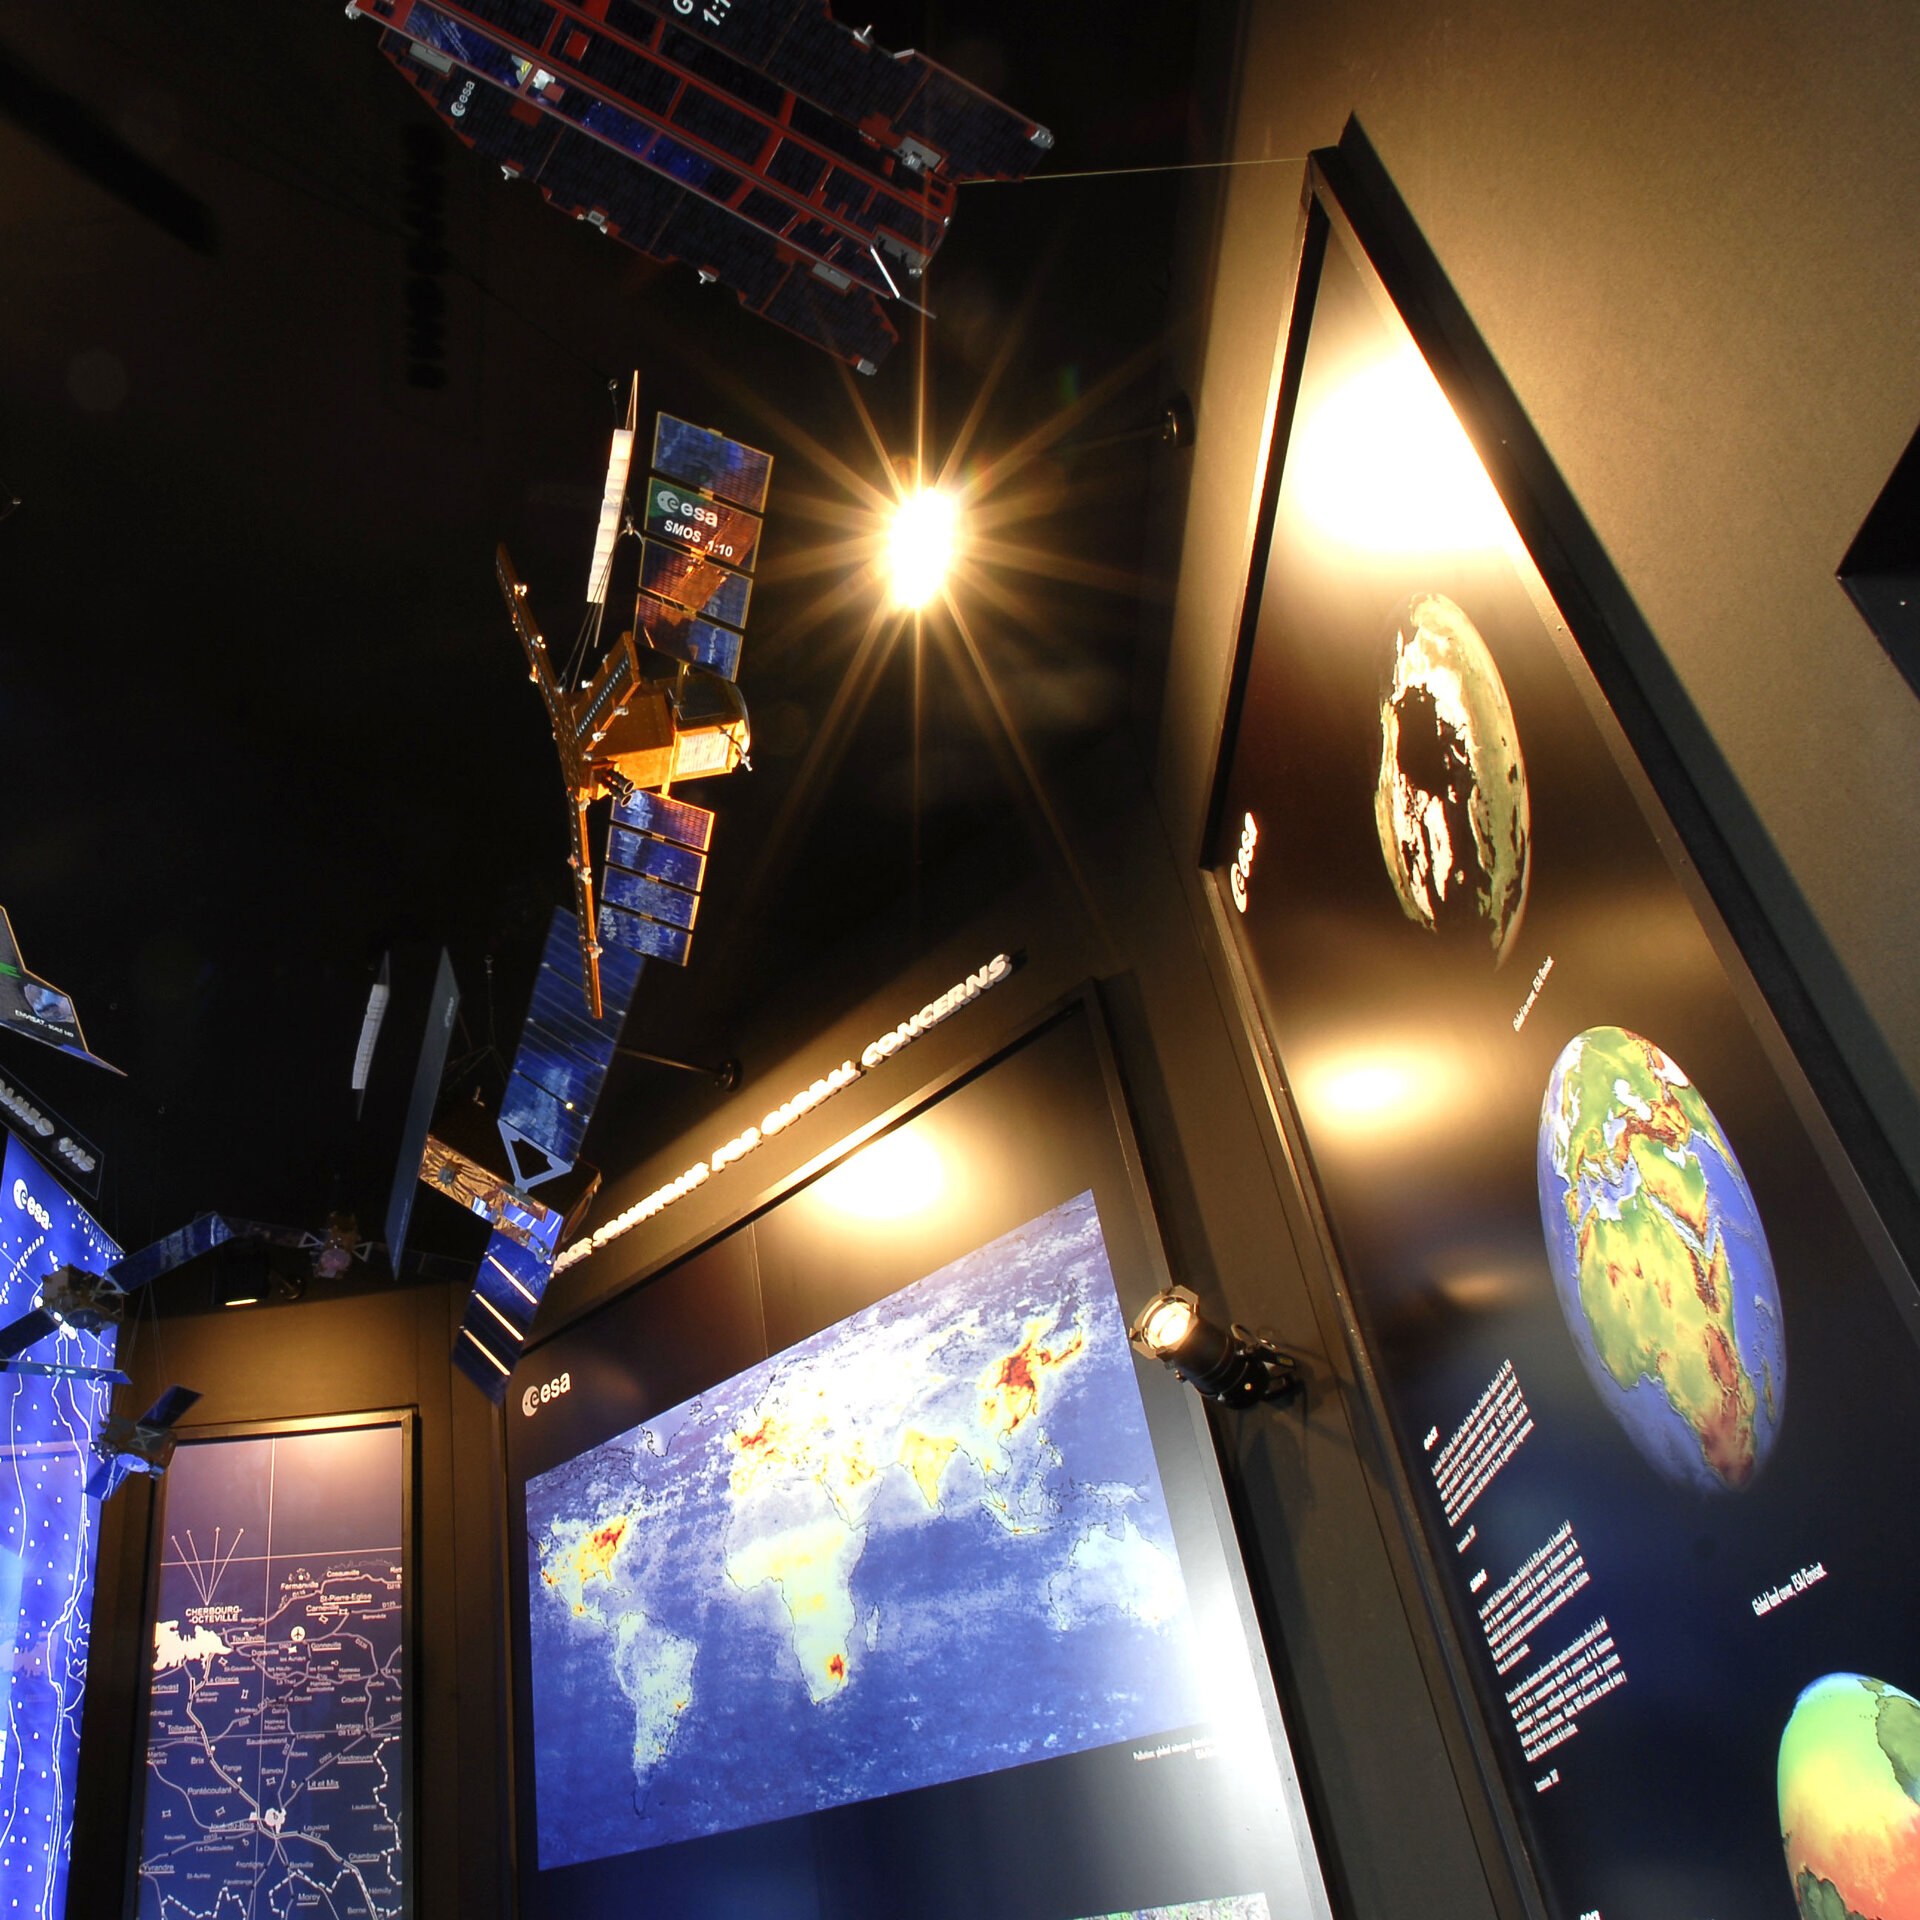 ESA panels showing Earth monitoring activities at IAC Valencia